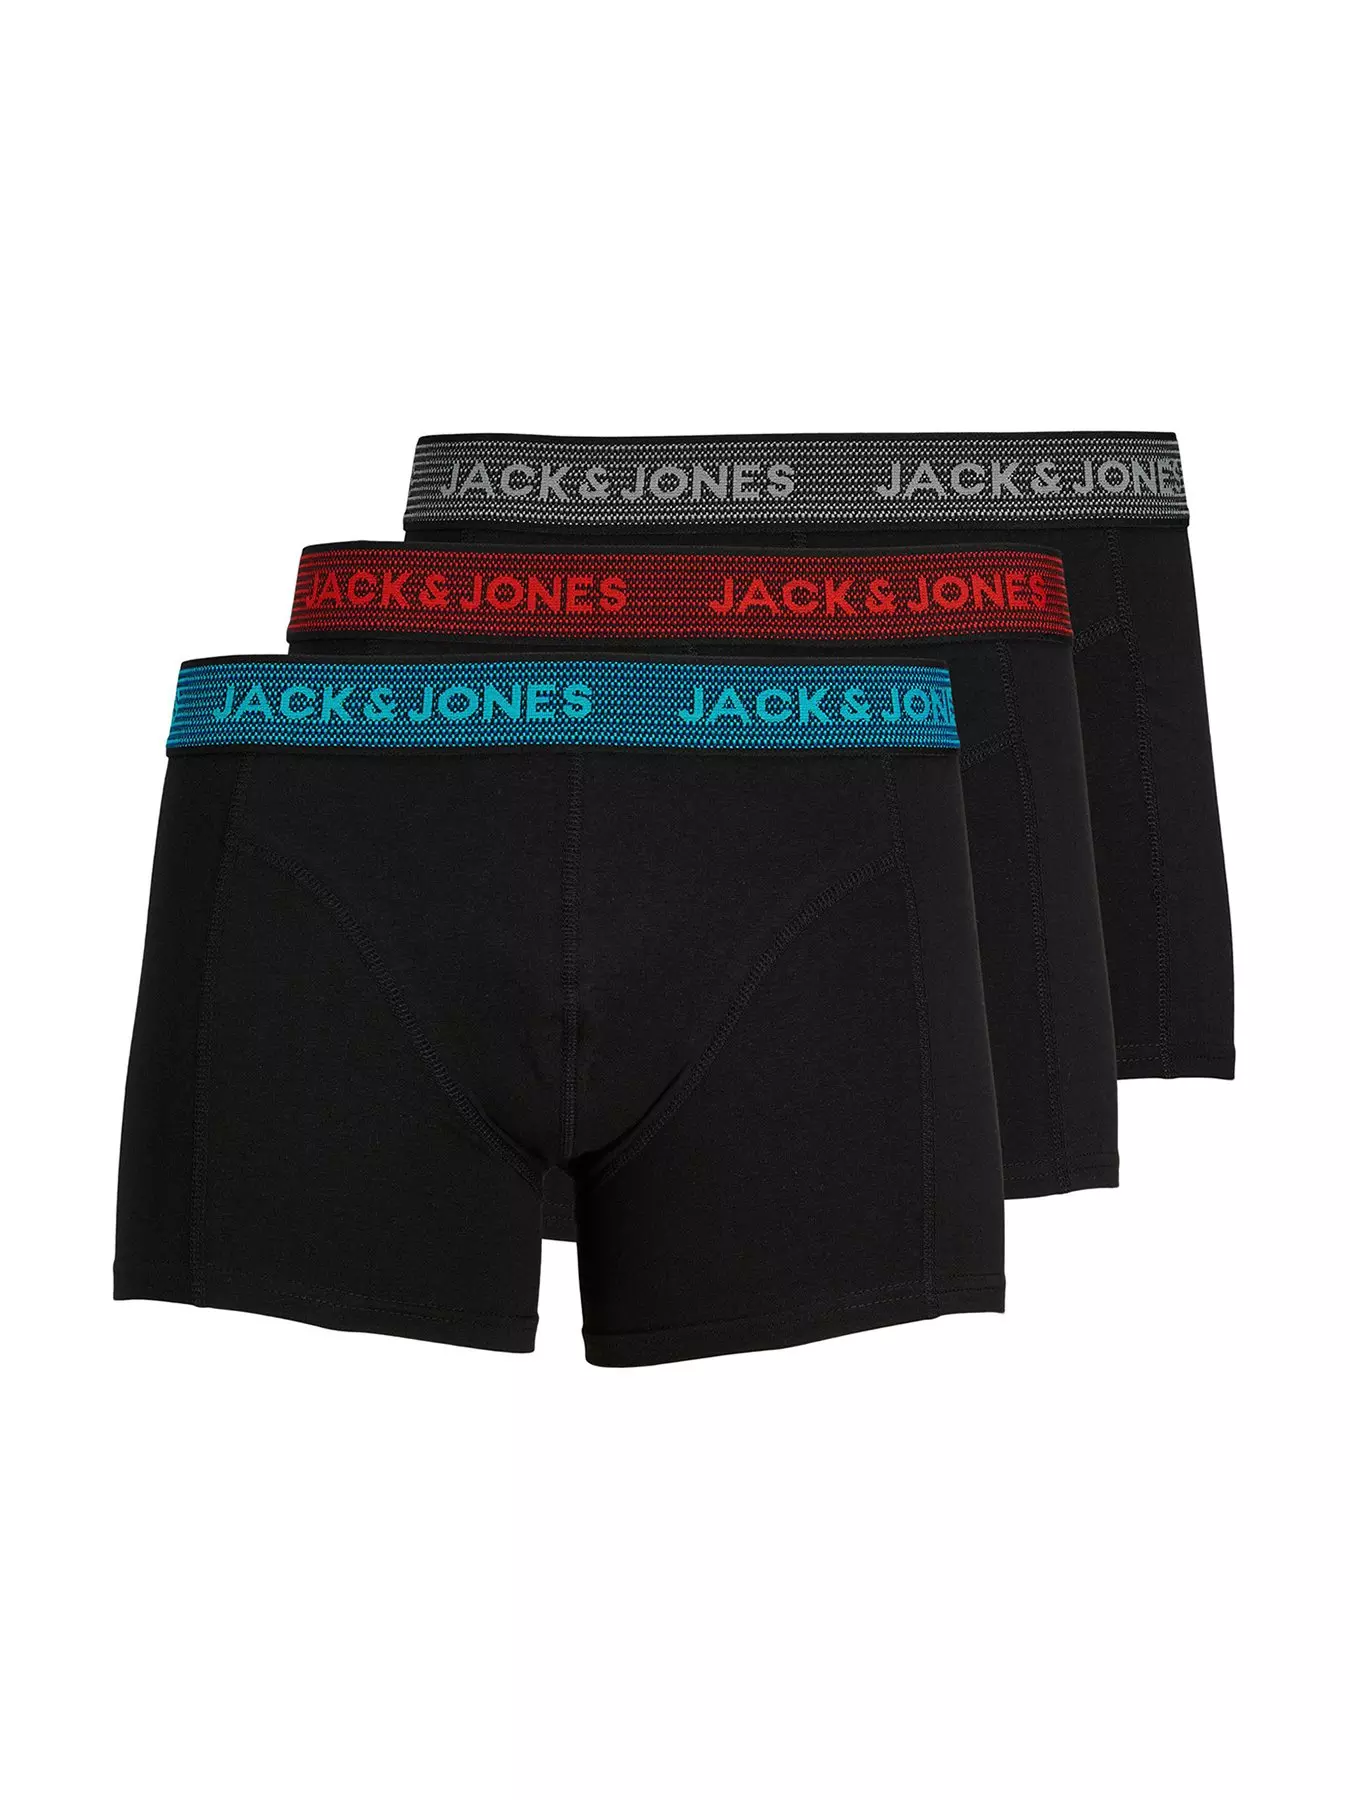 Walking Jack - Men's Underwear - Core Trunks White with blue